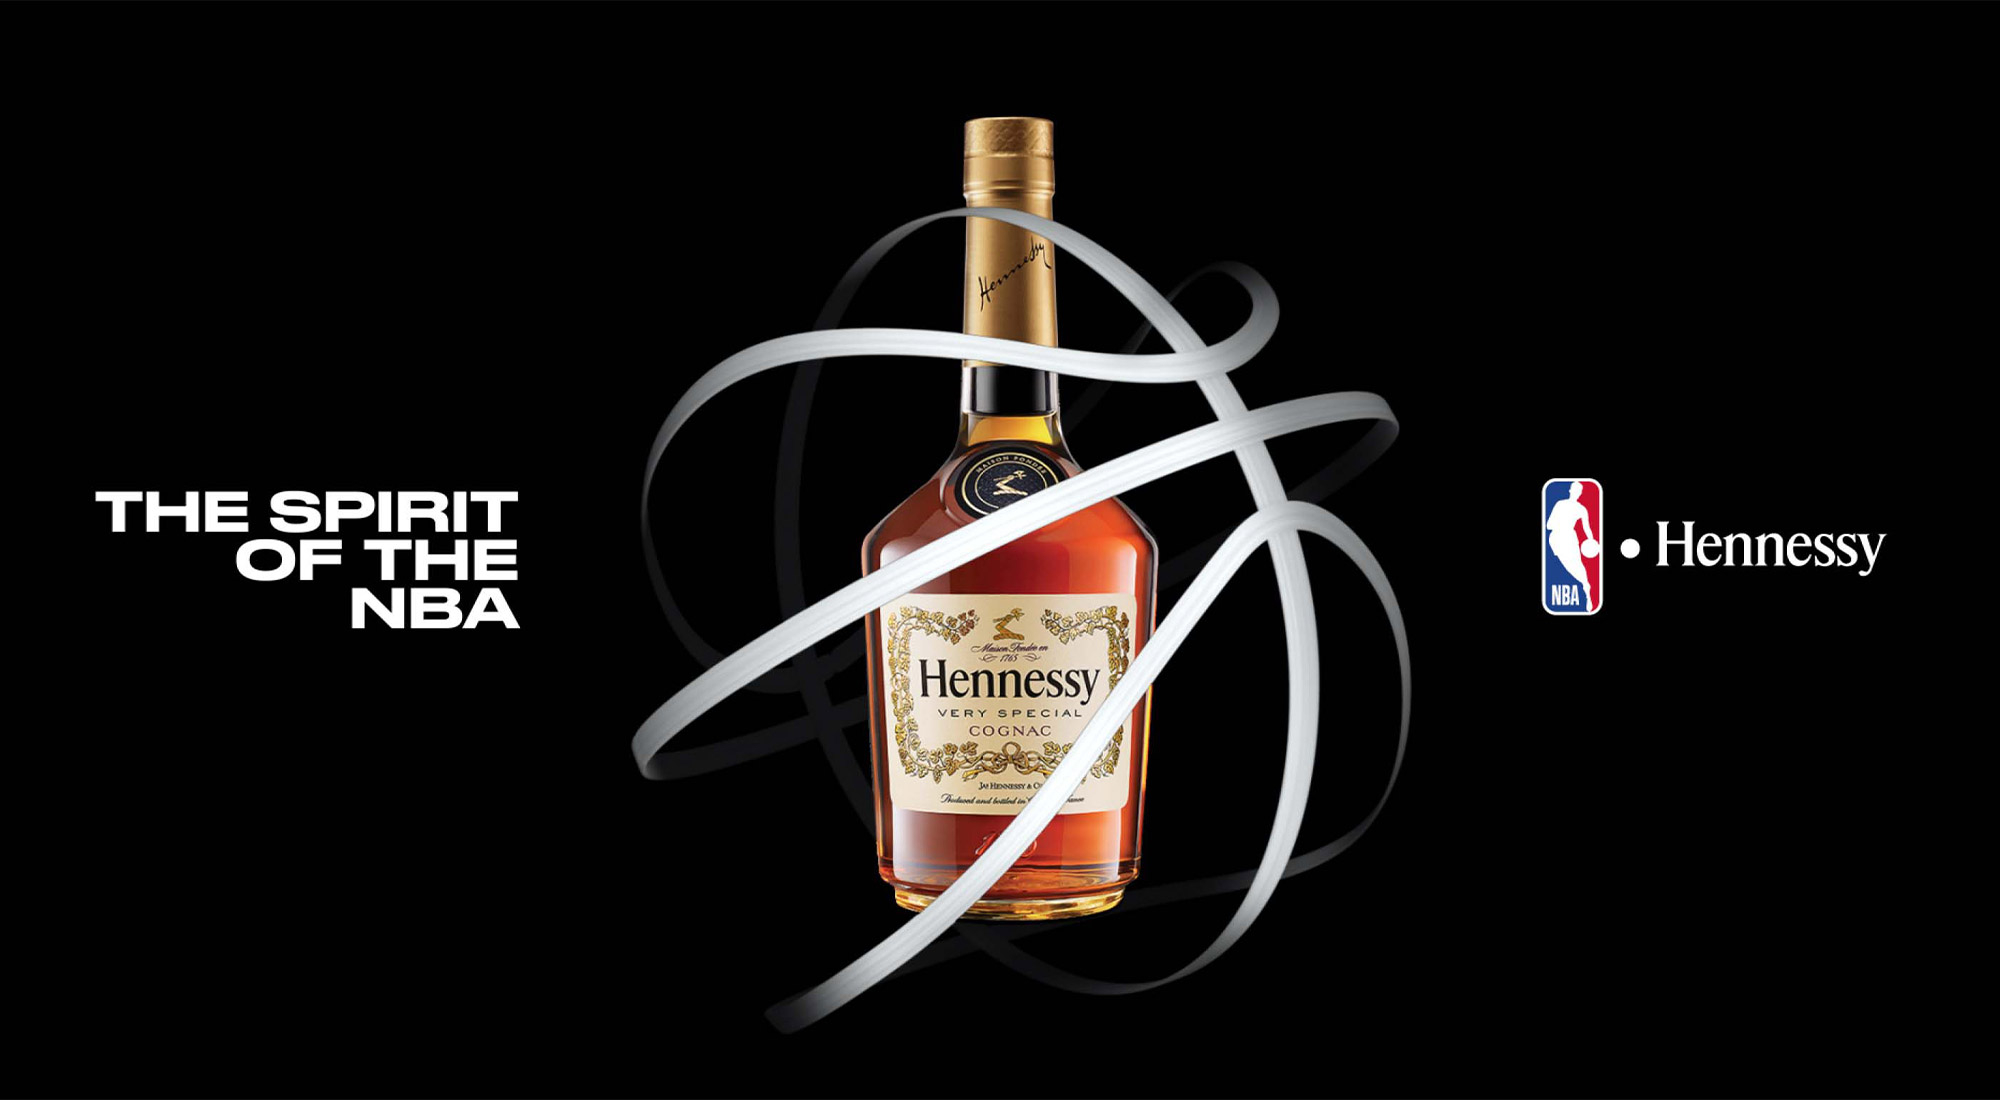 LVMH Moët Hennessy - 6 Pillars Marketing